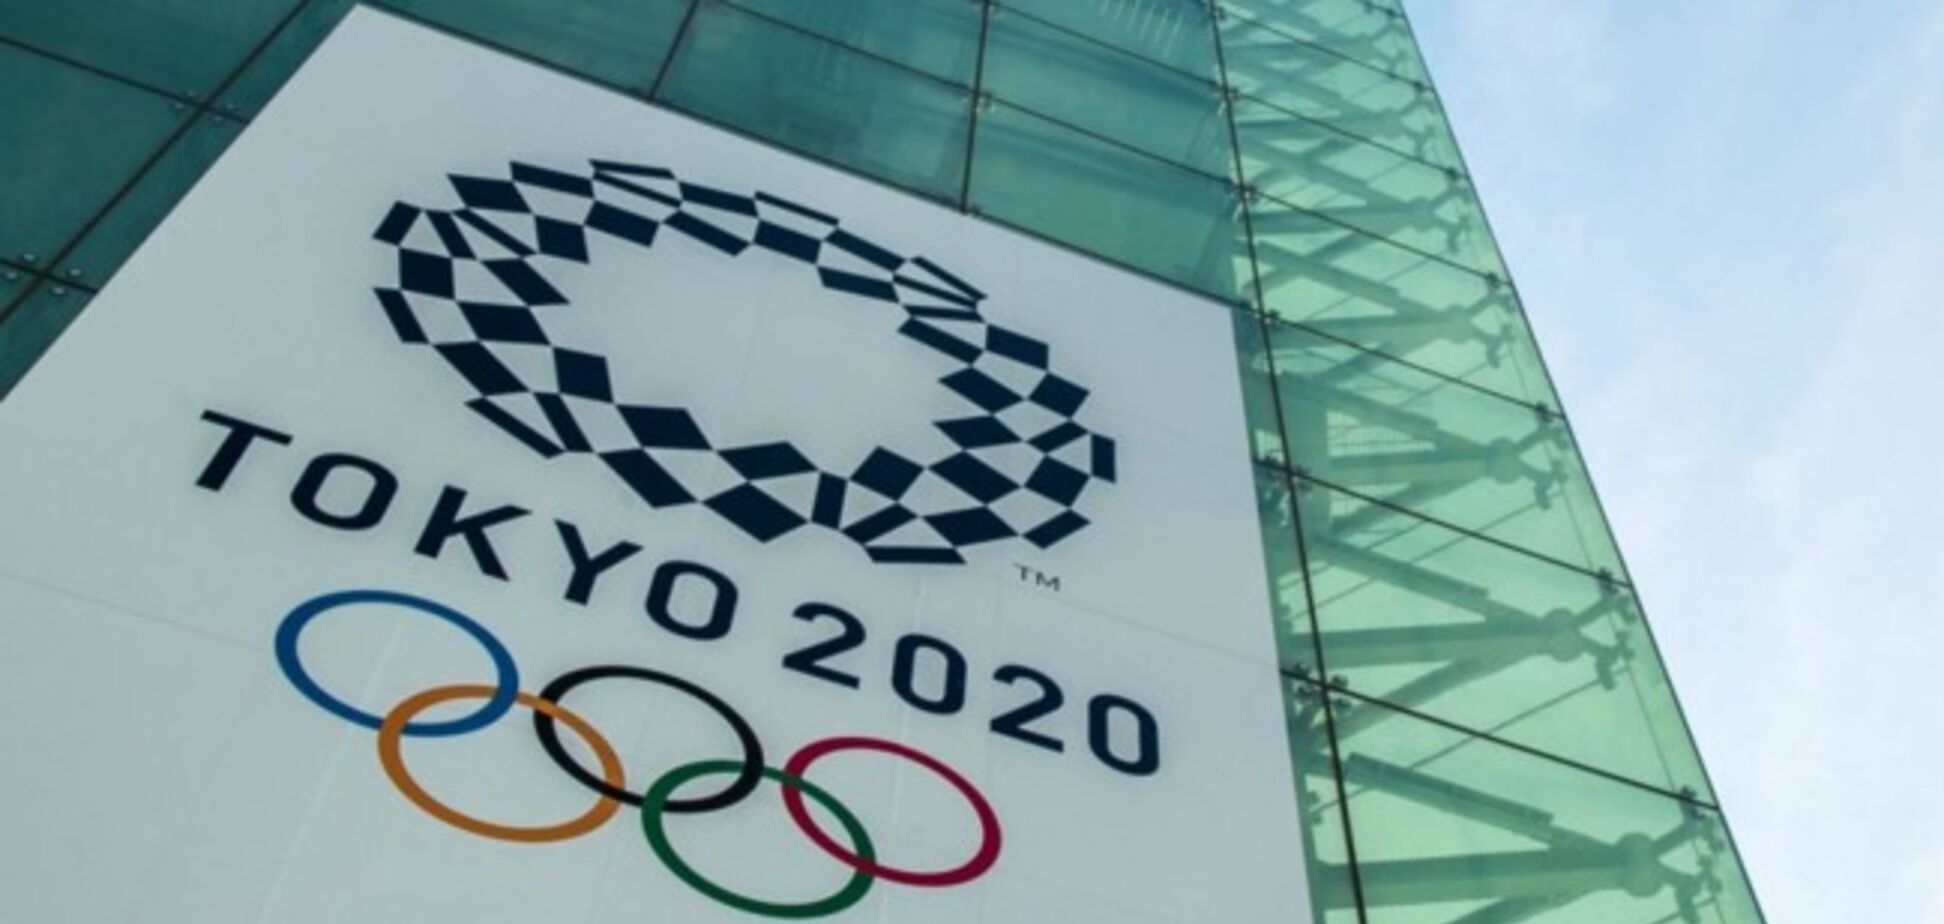 Олимпиада-2020 под угрозой из-за коронавируса